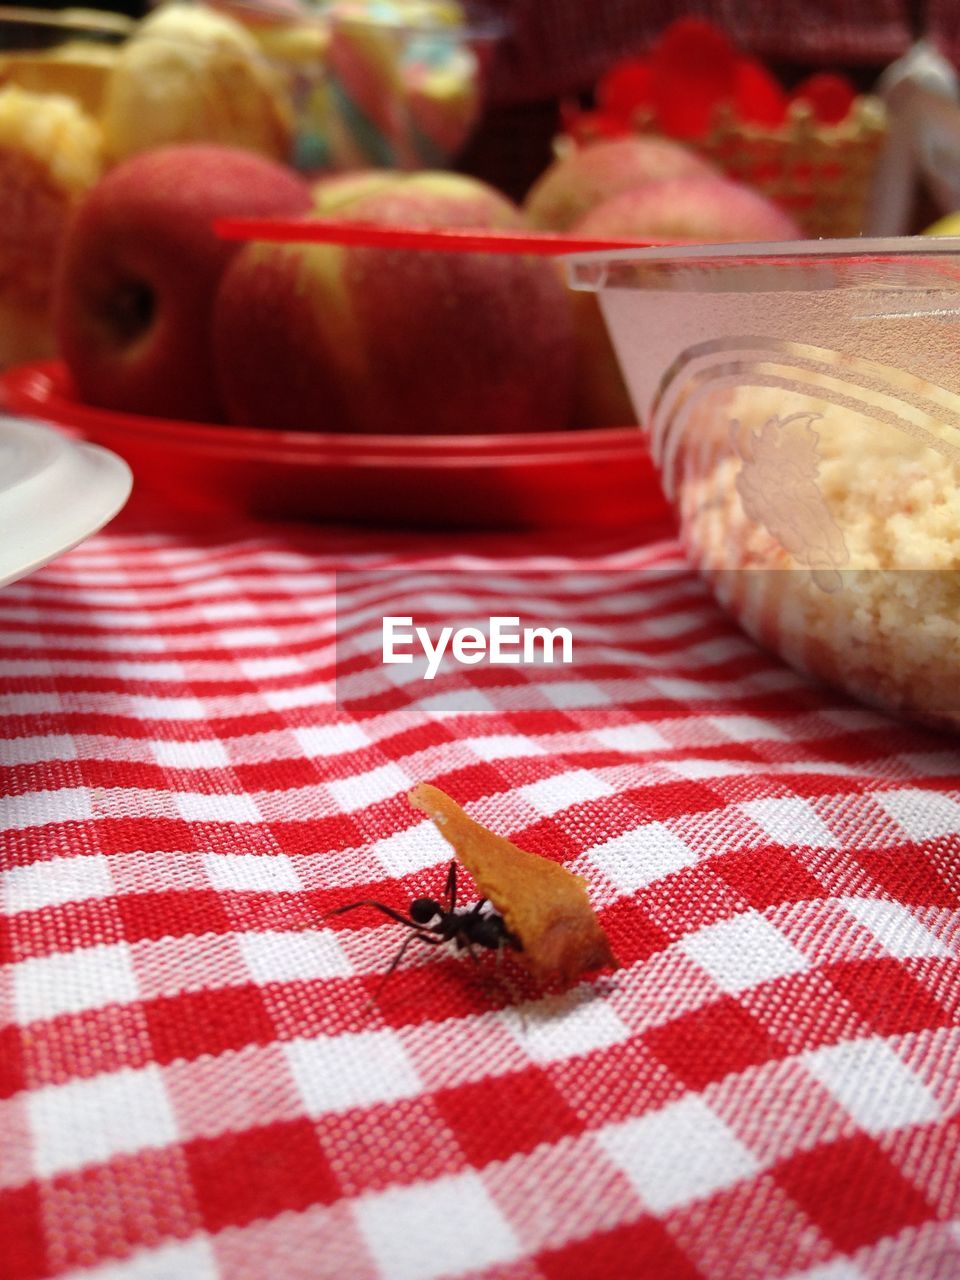 Ant at picnic 